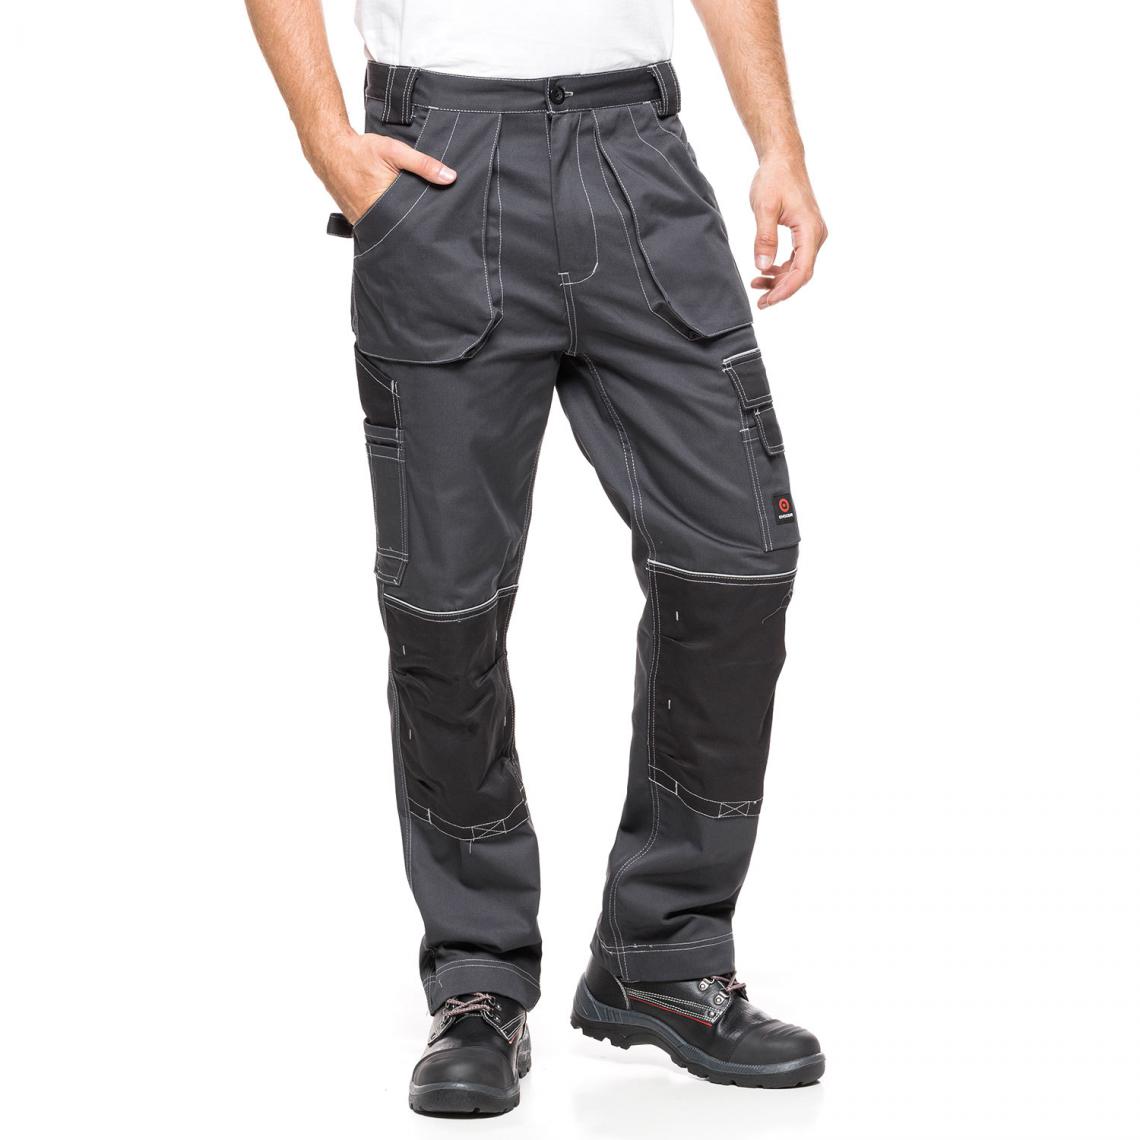 Sans Marque - Pantalon de travail Avacore HELIOS gris-noir Taille 50 (90-94) - Protections corps